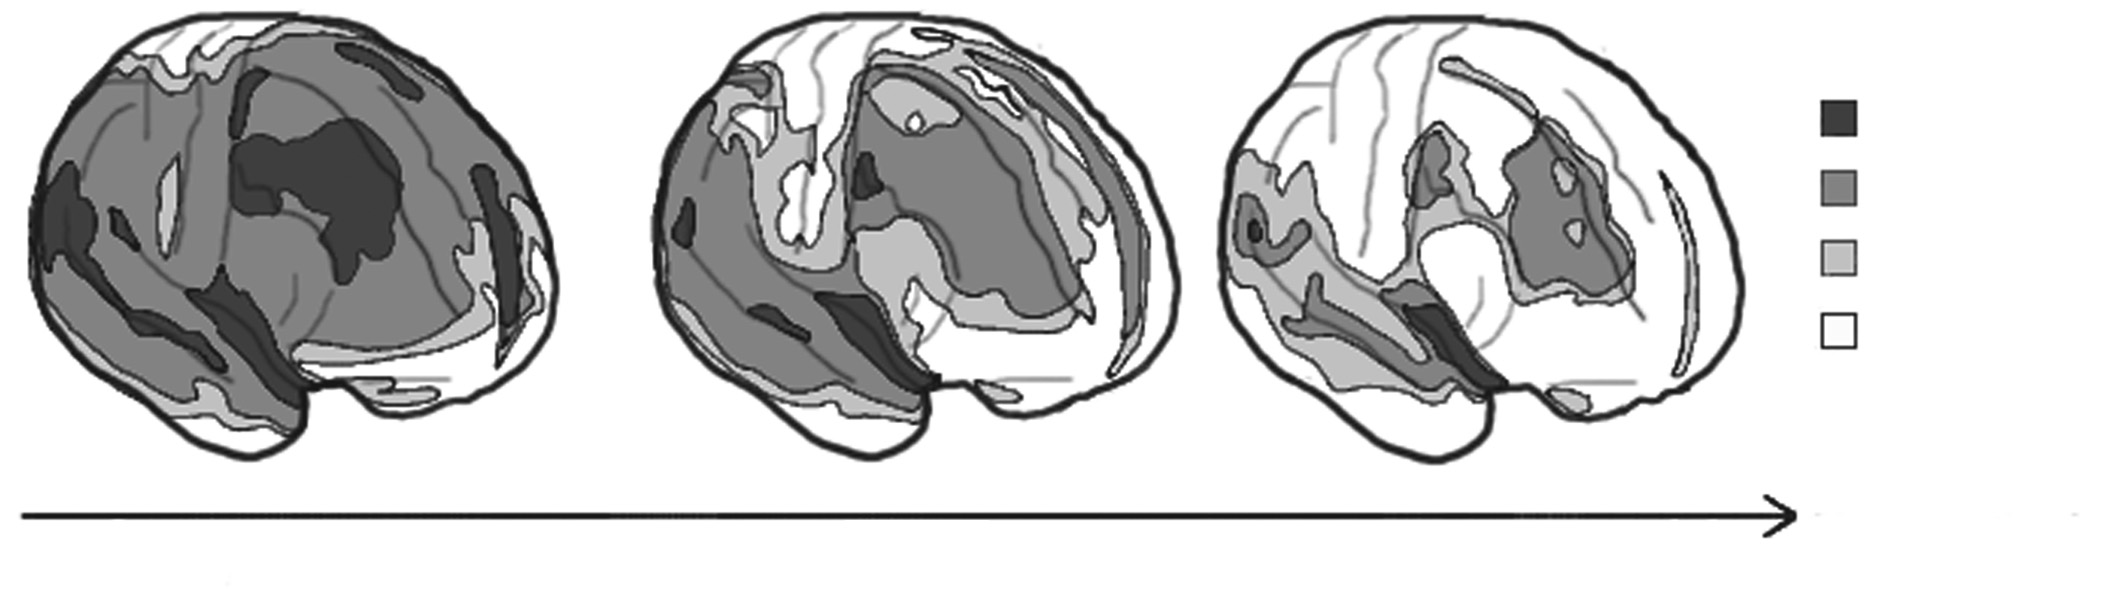 (Sowell et al., 1999, in Dumontheil et al., 2008). O Donnell et al. bestudeerde de corticale dikte zowel in de rostrale PFC als in de dorsolaterale PFC bij kinderen en adolescenten.